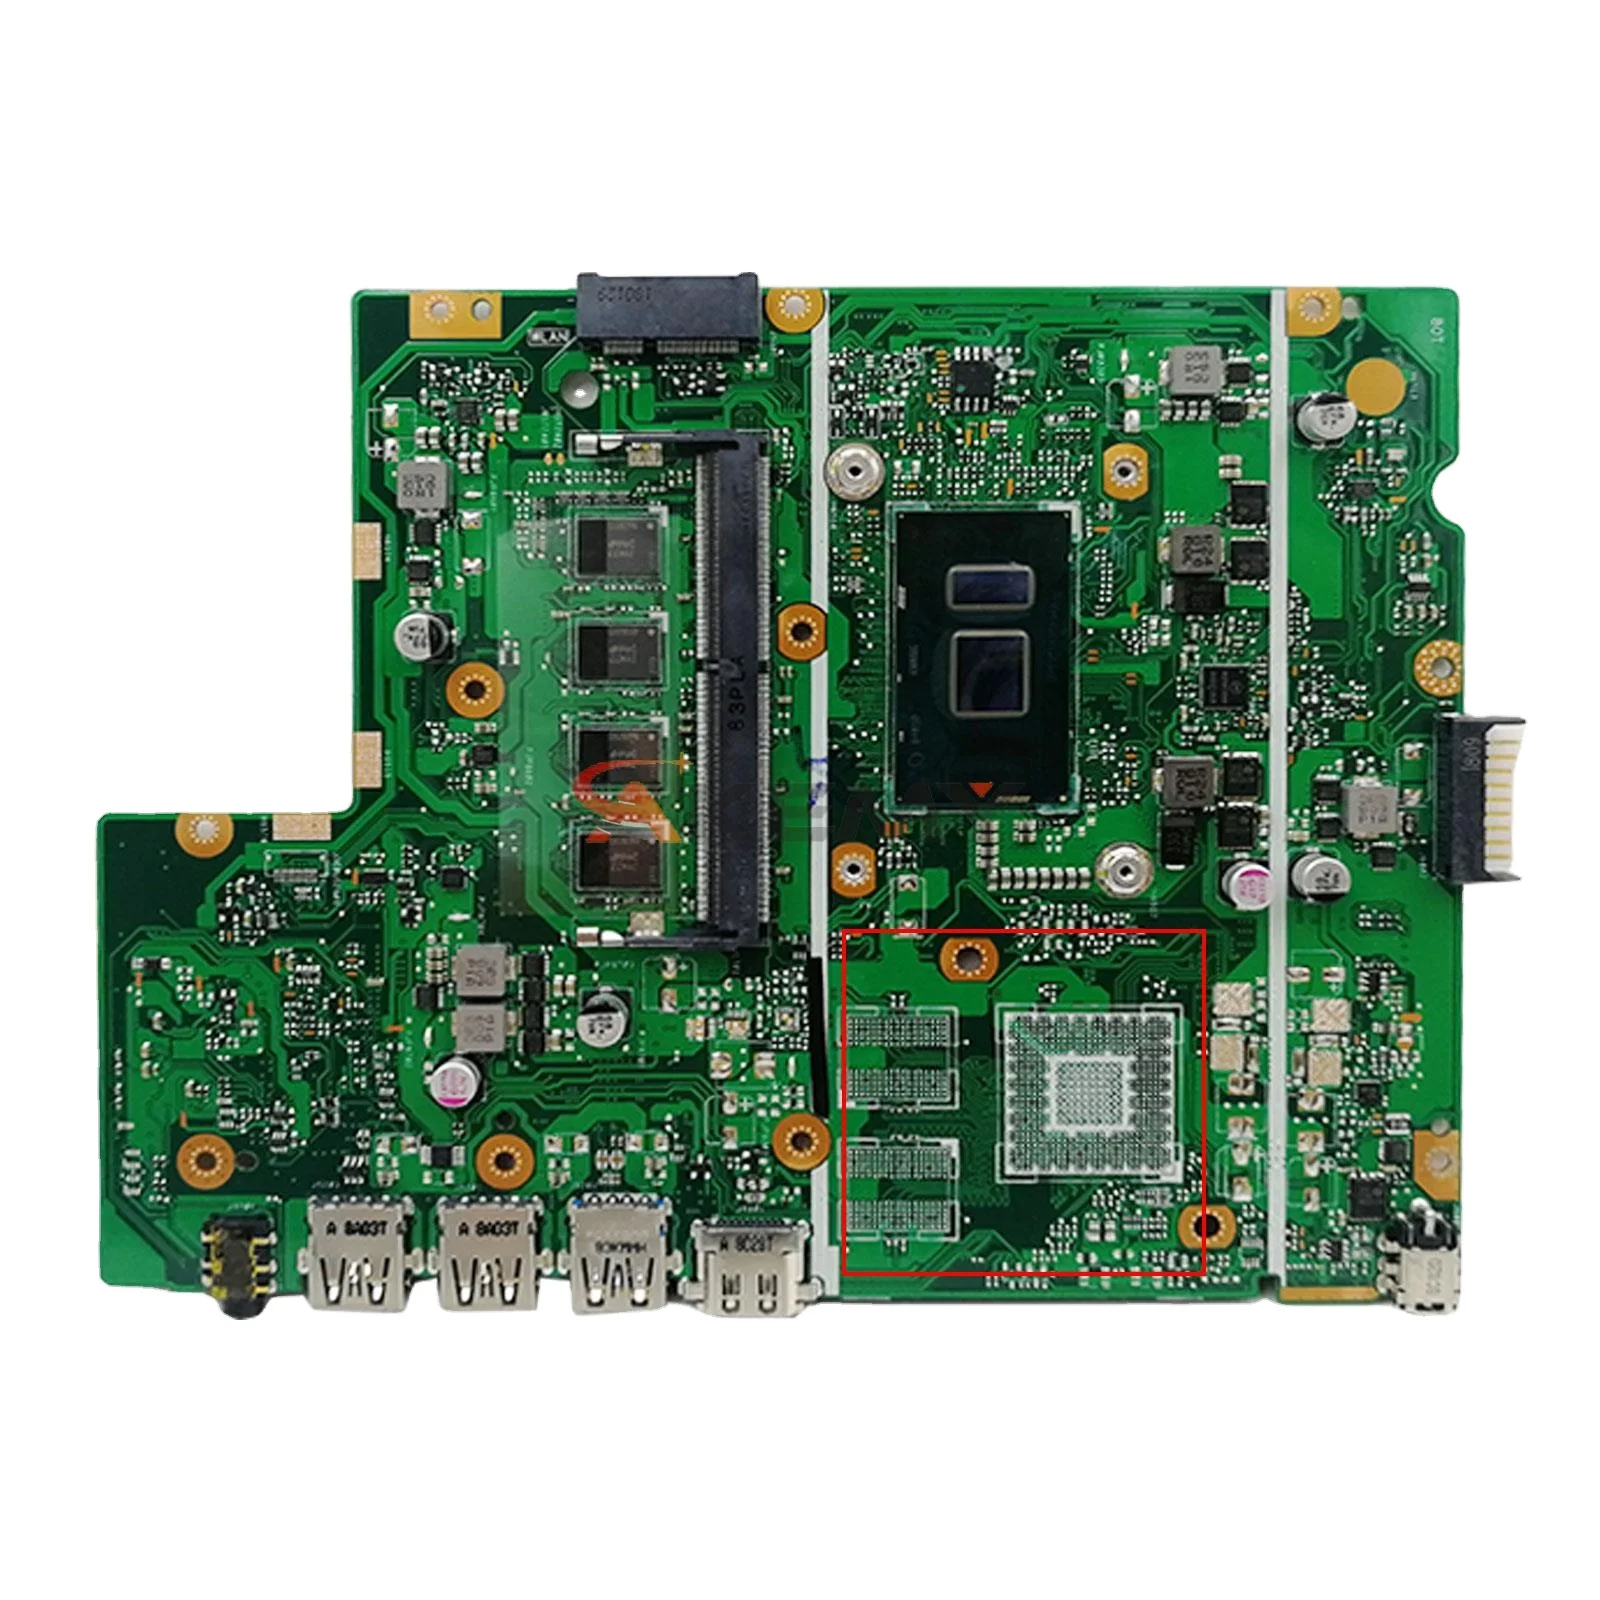 

X540UV Mainboard For ASUS Vivobook F540UV P540UV R540UV K540UV A540UV Laptop Motherboard I3 I5 I7 6th/7th Gen 4GB/8GB-RAM